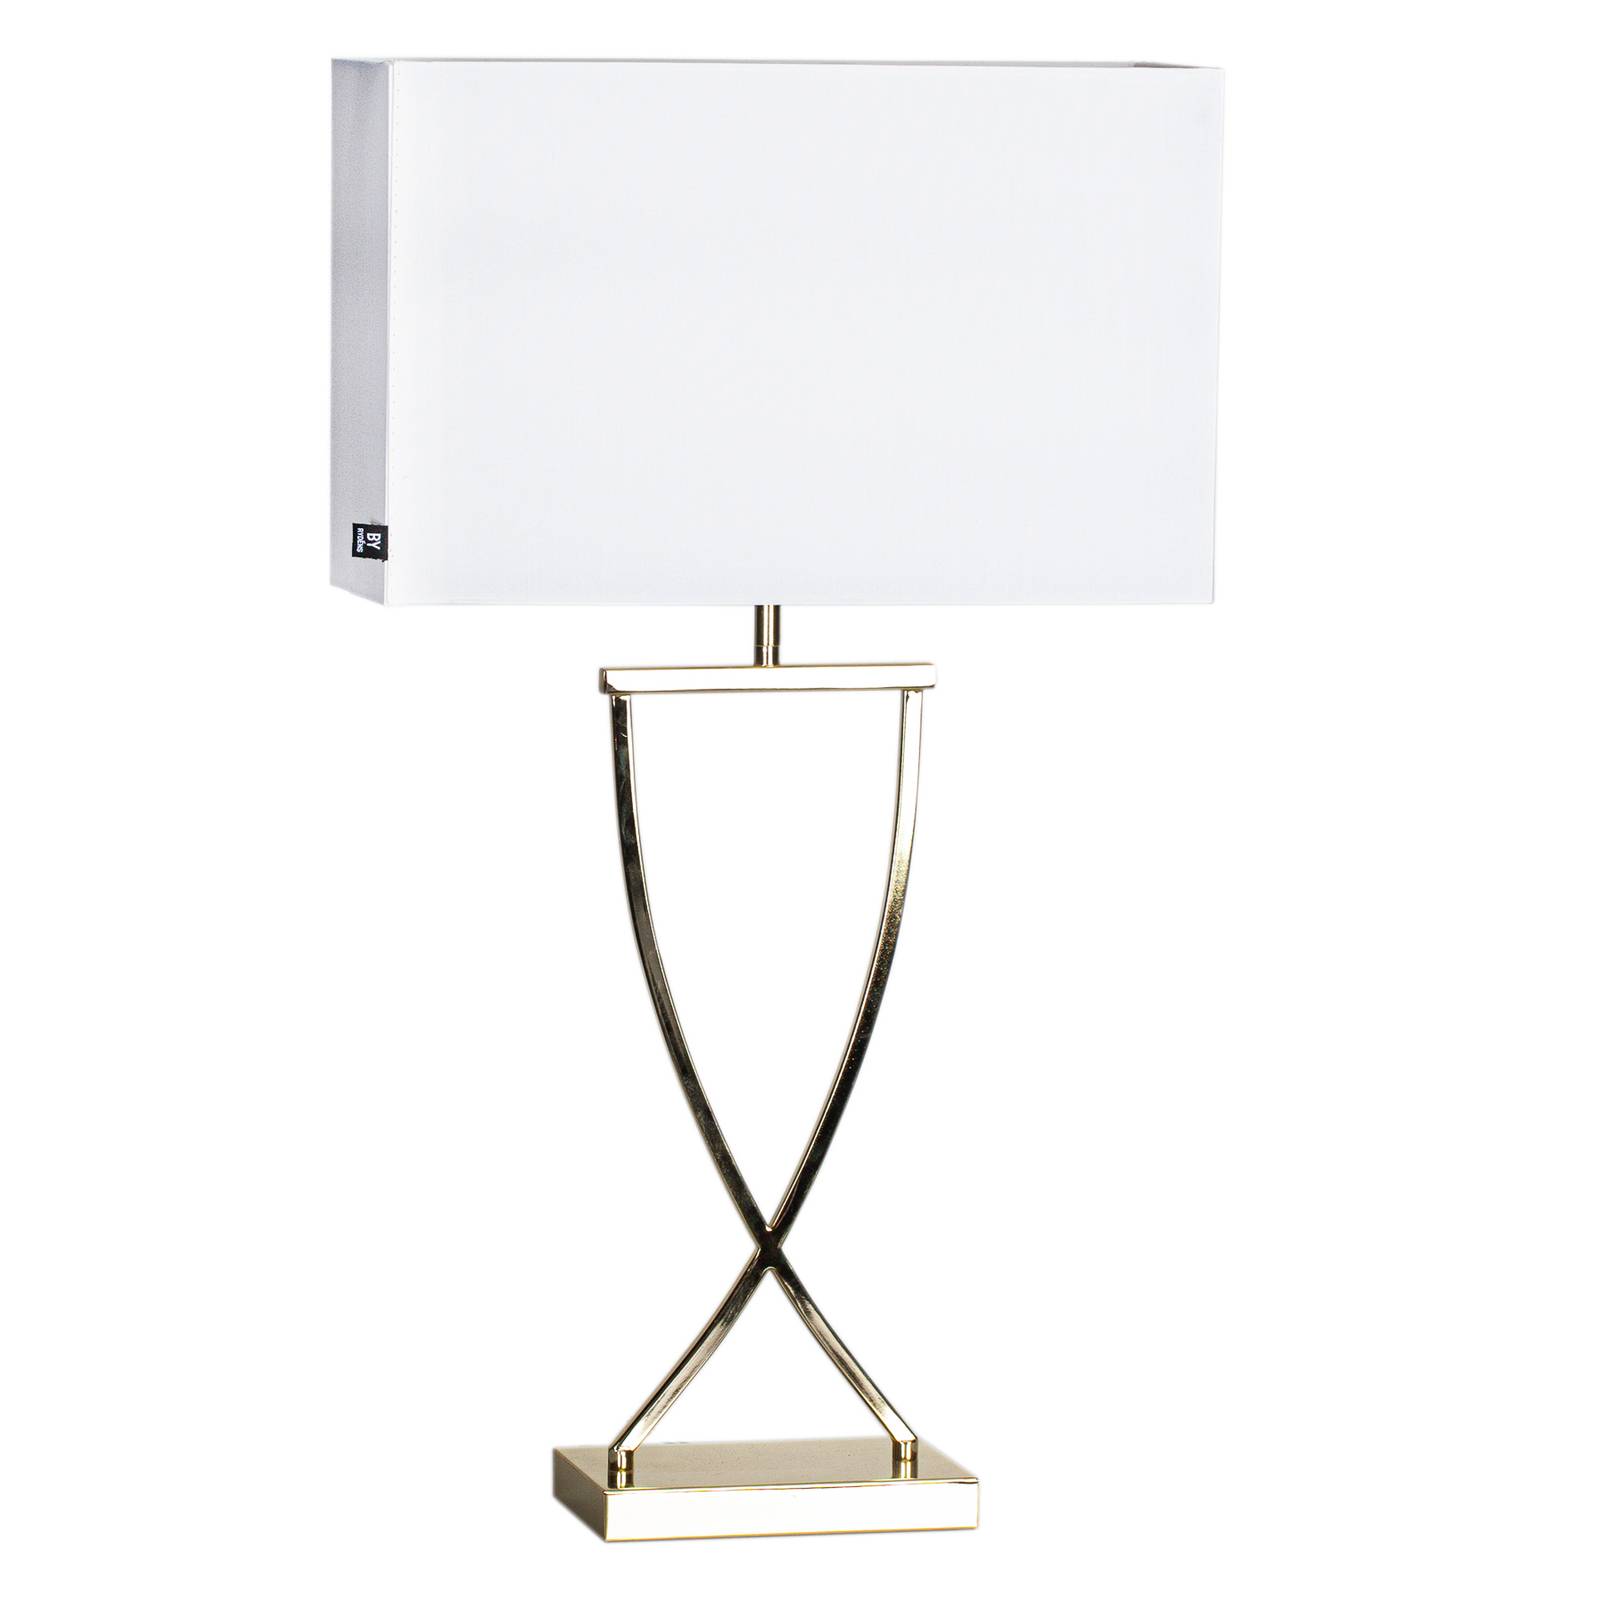 Image of By Rydéns Omega lampe de table laiton/blanc hauteur 69cm 7391741296214